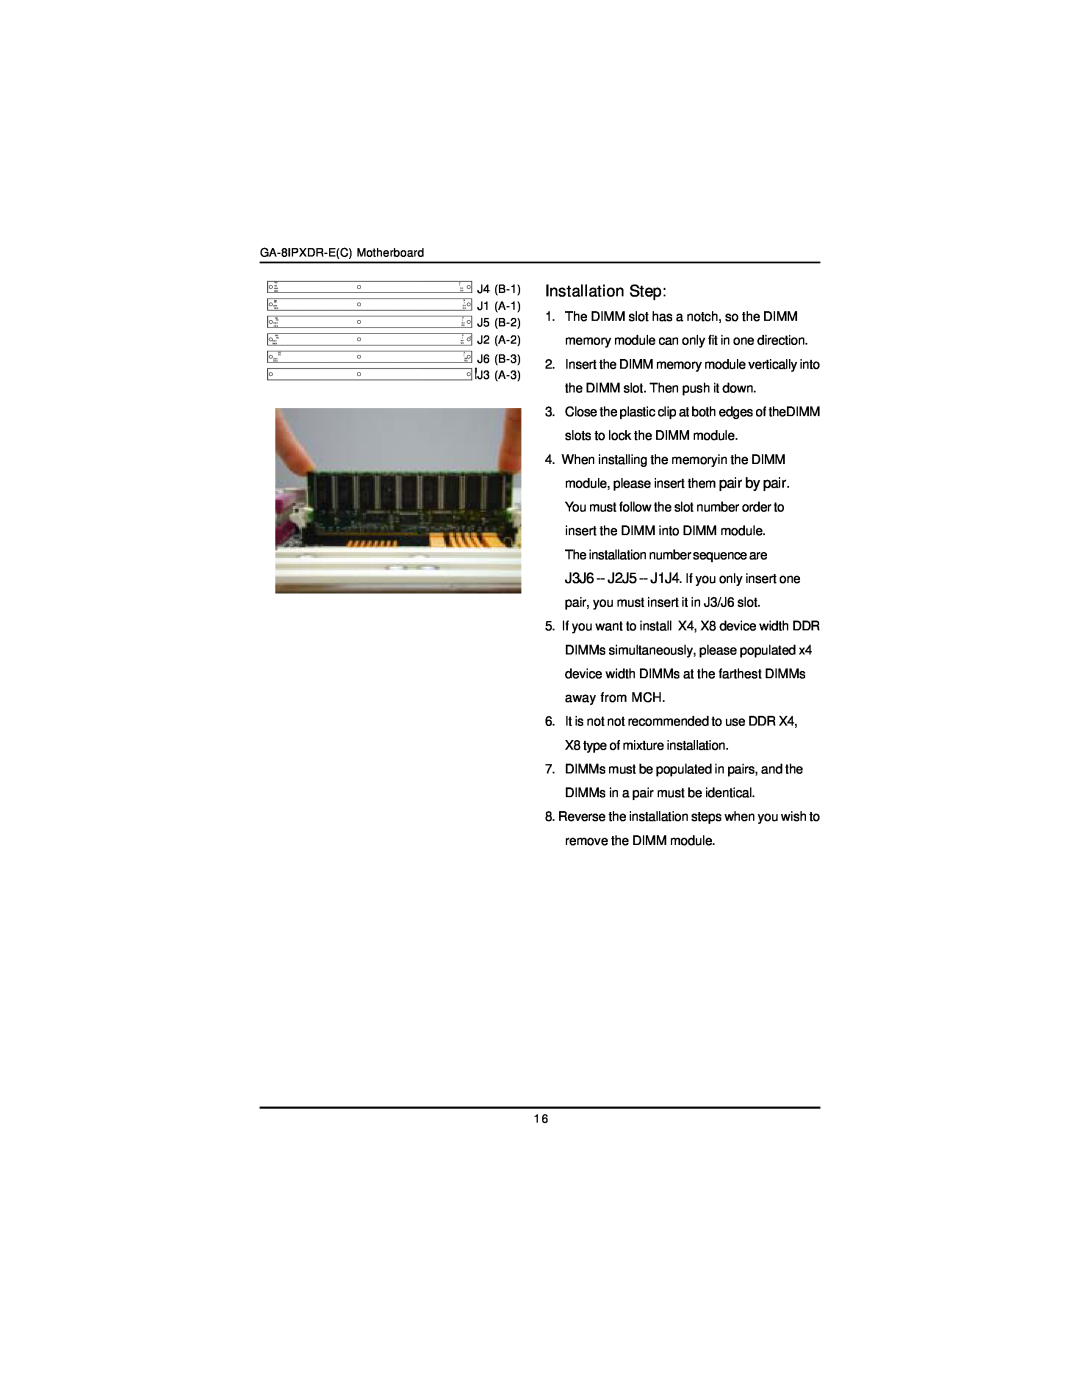 Intel GA-8IPXDR-E user manual Installation Step, J6 B-3 J3 A-3 